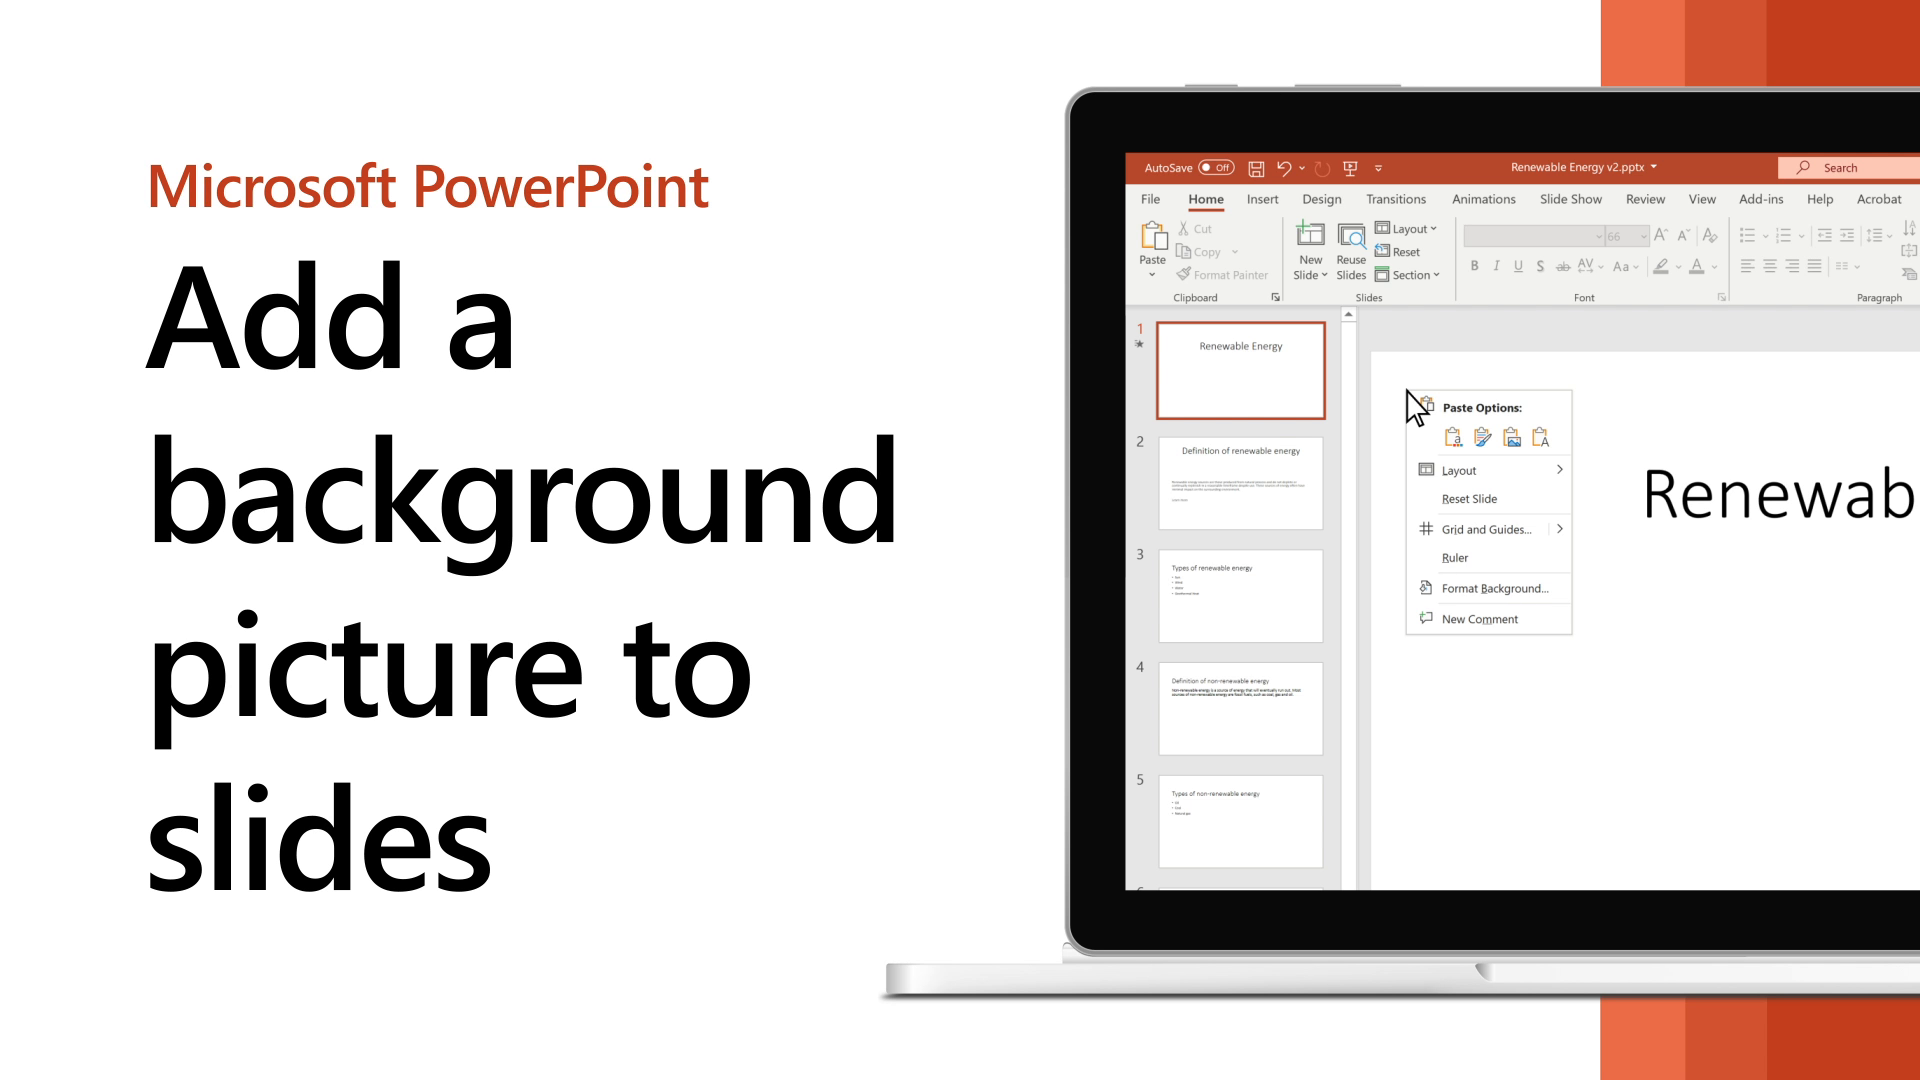 Thêm hình nền cho Slide Powerpoint của bạn! Hãy tạo sự khác biệt cho bài thuyết trình của bạn bằng cách tìm những hình ảnh đặc sắc và thêm vào slide Powerpoint của mình. Điều đó sẽ giúp cho công việc của bạn trở nên thú vị hơn và thu hút được sự chú ý của khán giả.